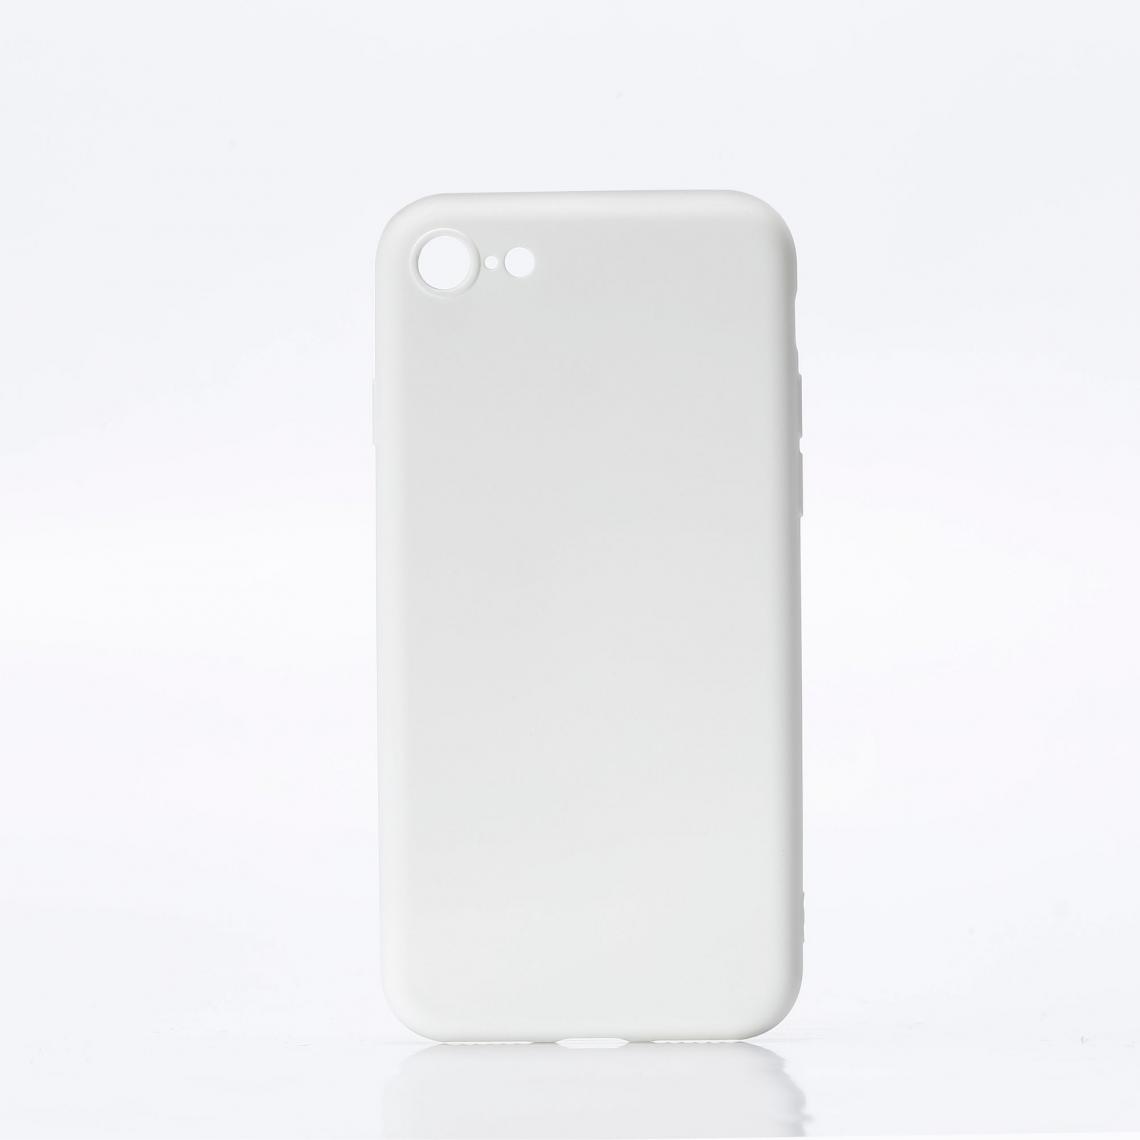 We - WE Coque de protection ulta-fine et souple pour smartphone APPLE iPhone 7/8/SE 2020. Douce au toucher. Protège des chocs et rayures. Blanc - Coque, étui smartphone